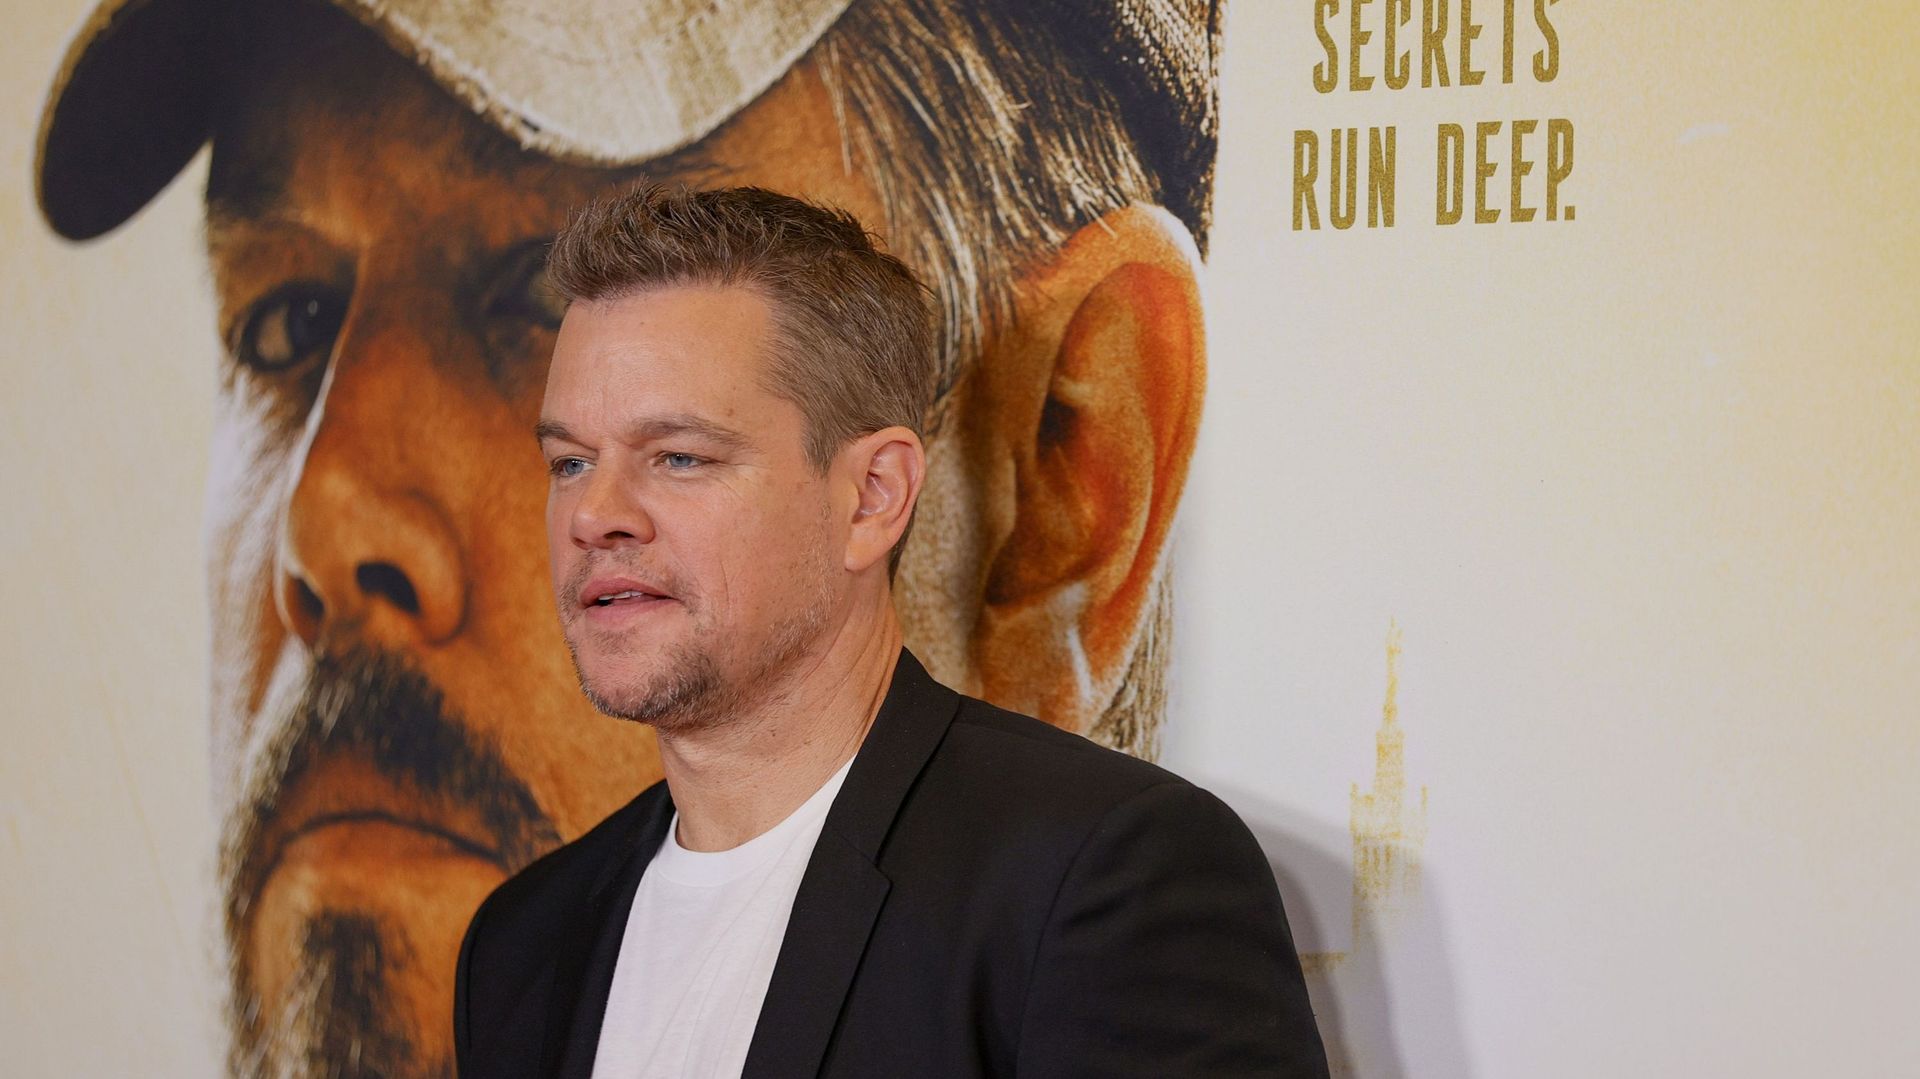 Bad buzz pour Matt Damon, réprimandé par sa fille pour une insulte homophobe